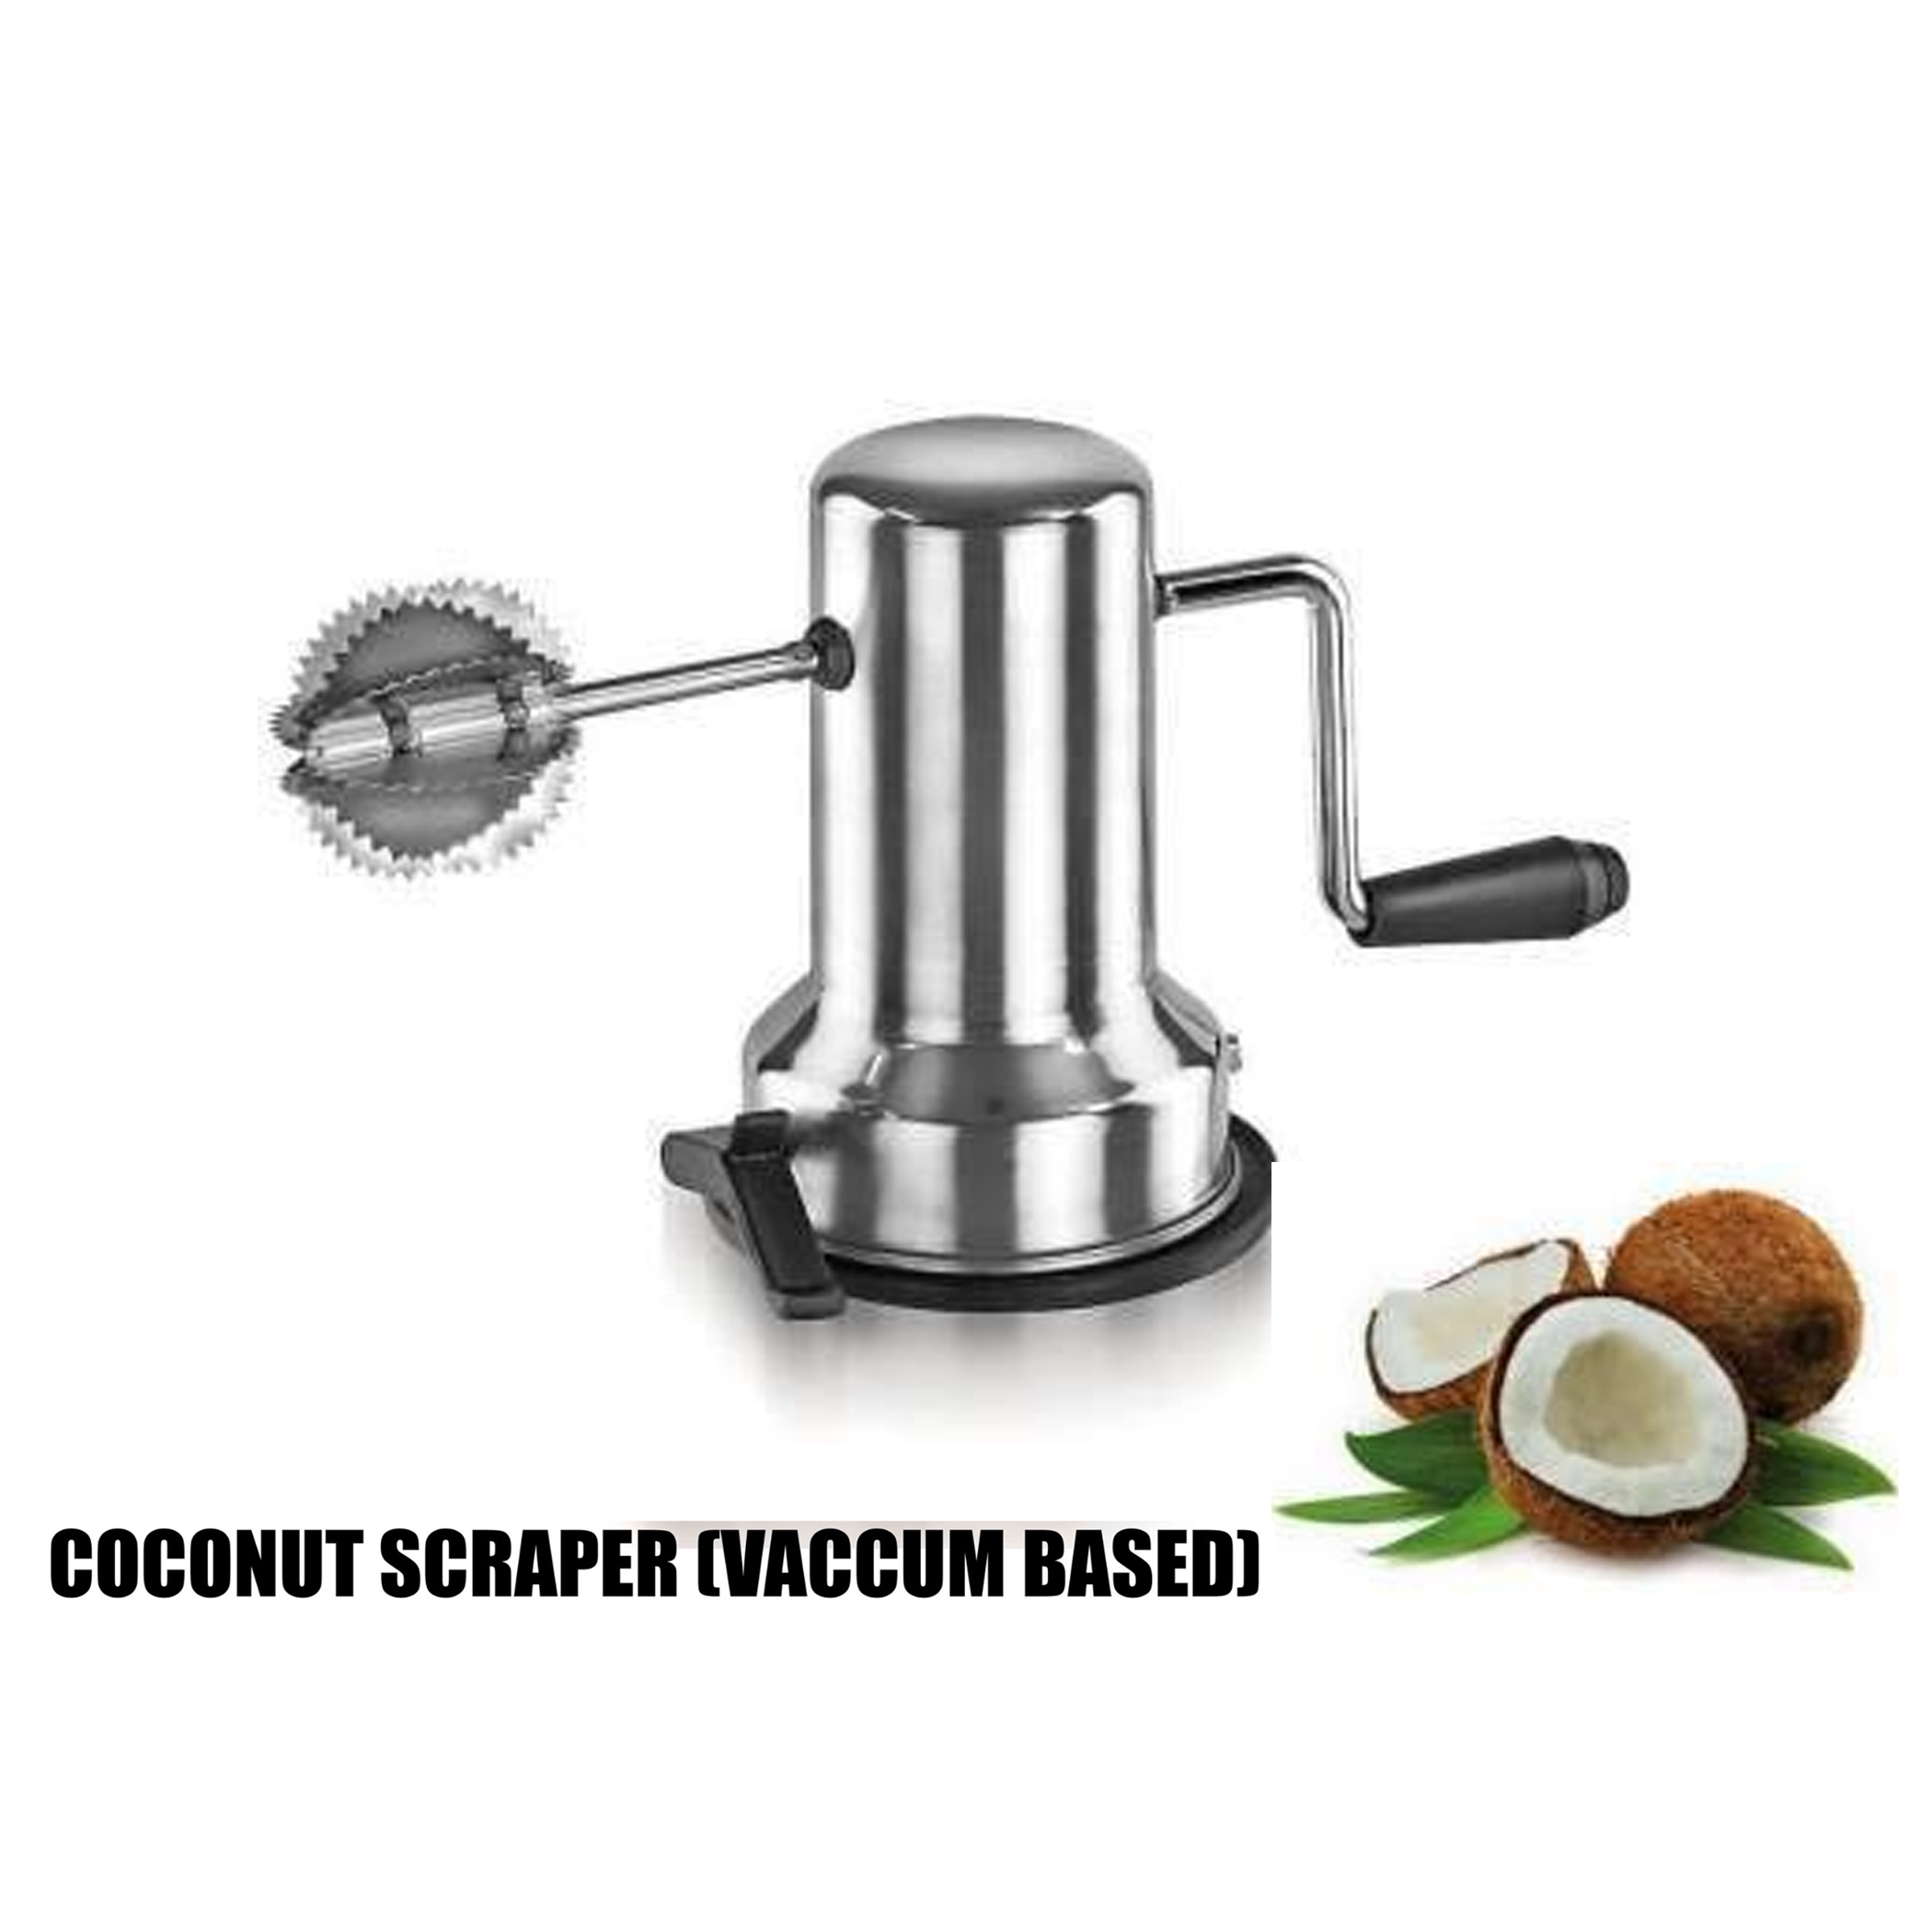 Coconut Scraper - Vaccum Based